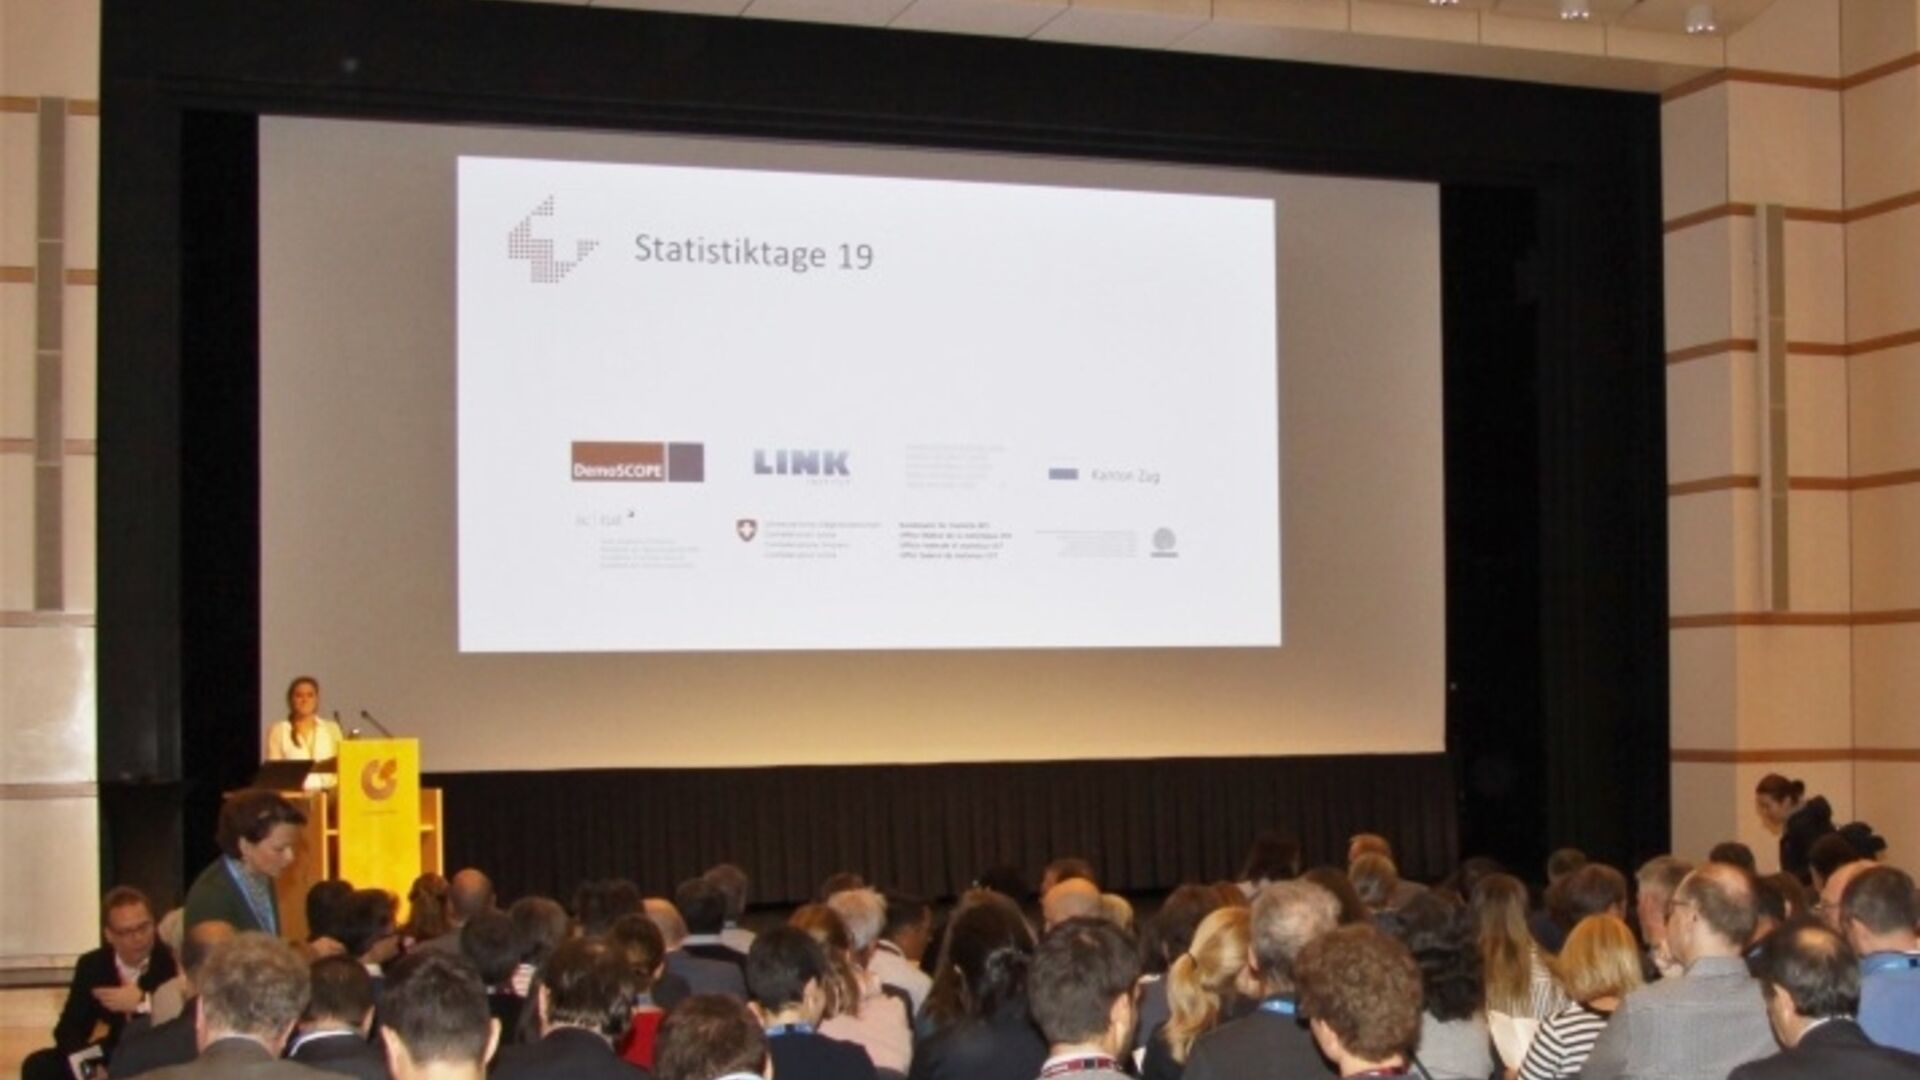 Dnevi švicarske statistike: novi viri podatkov in sodobne metode analize